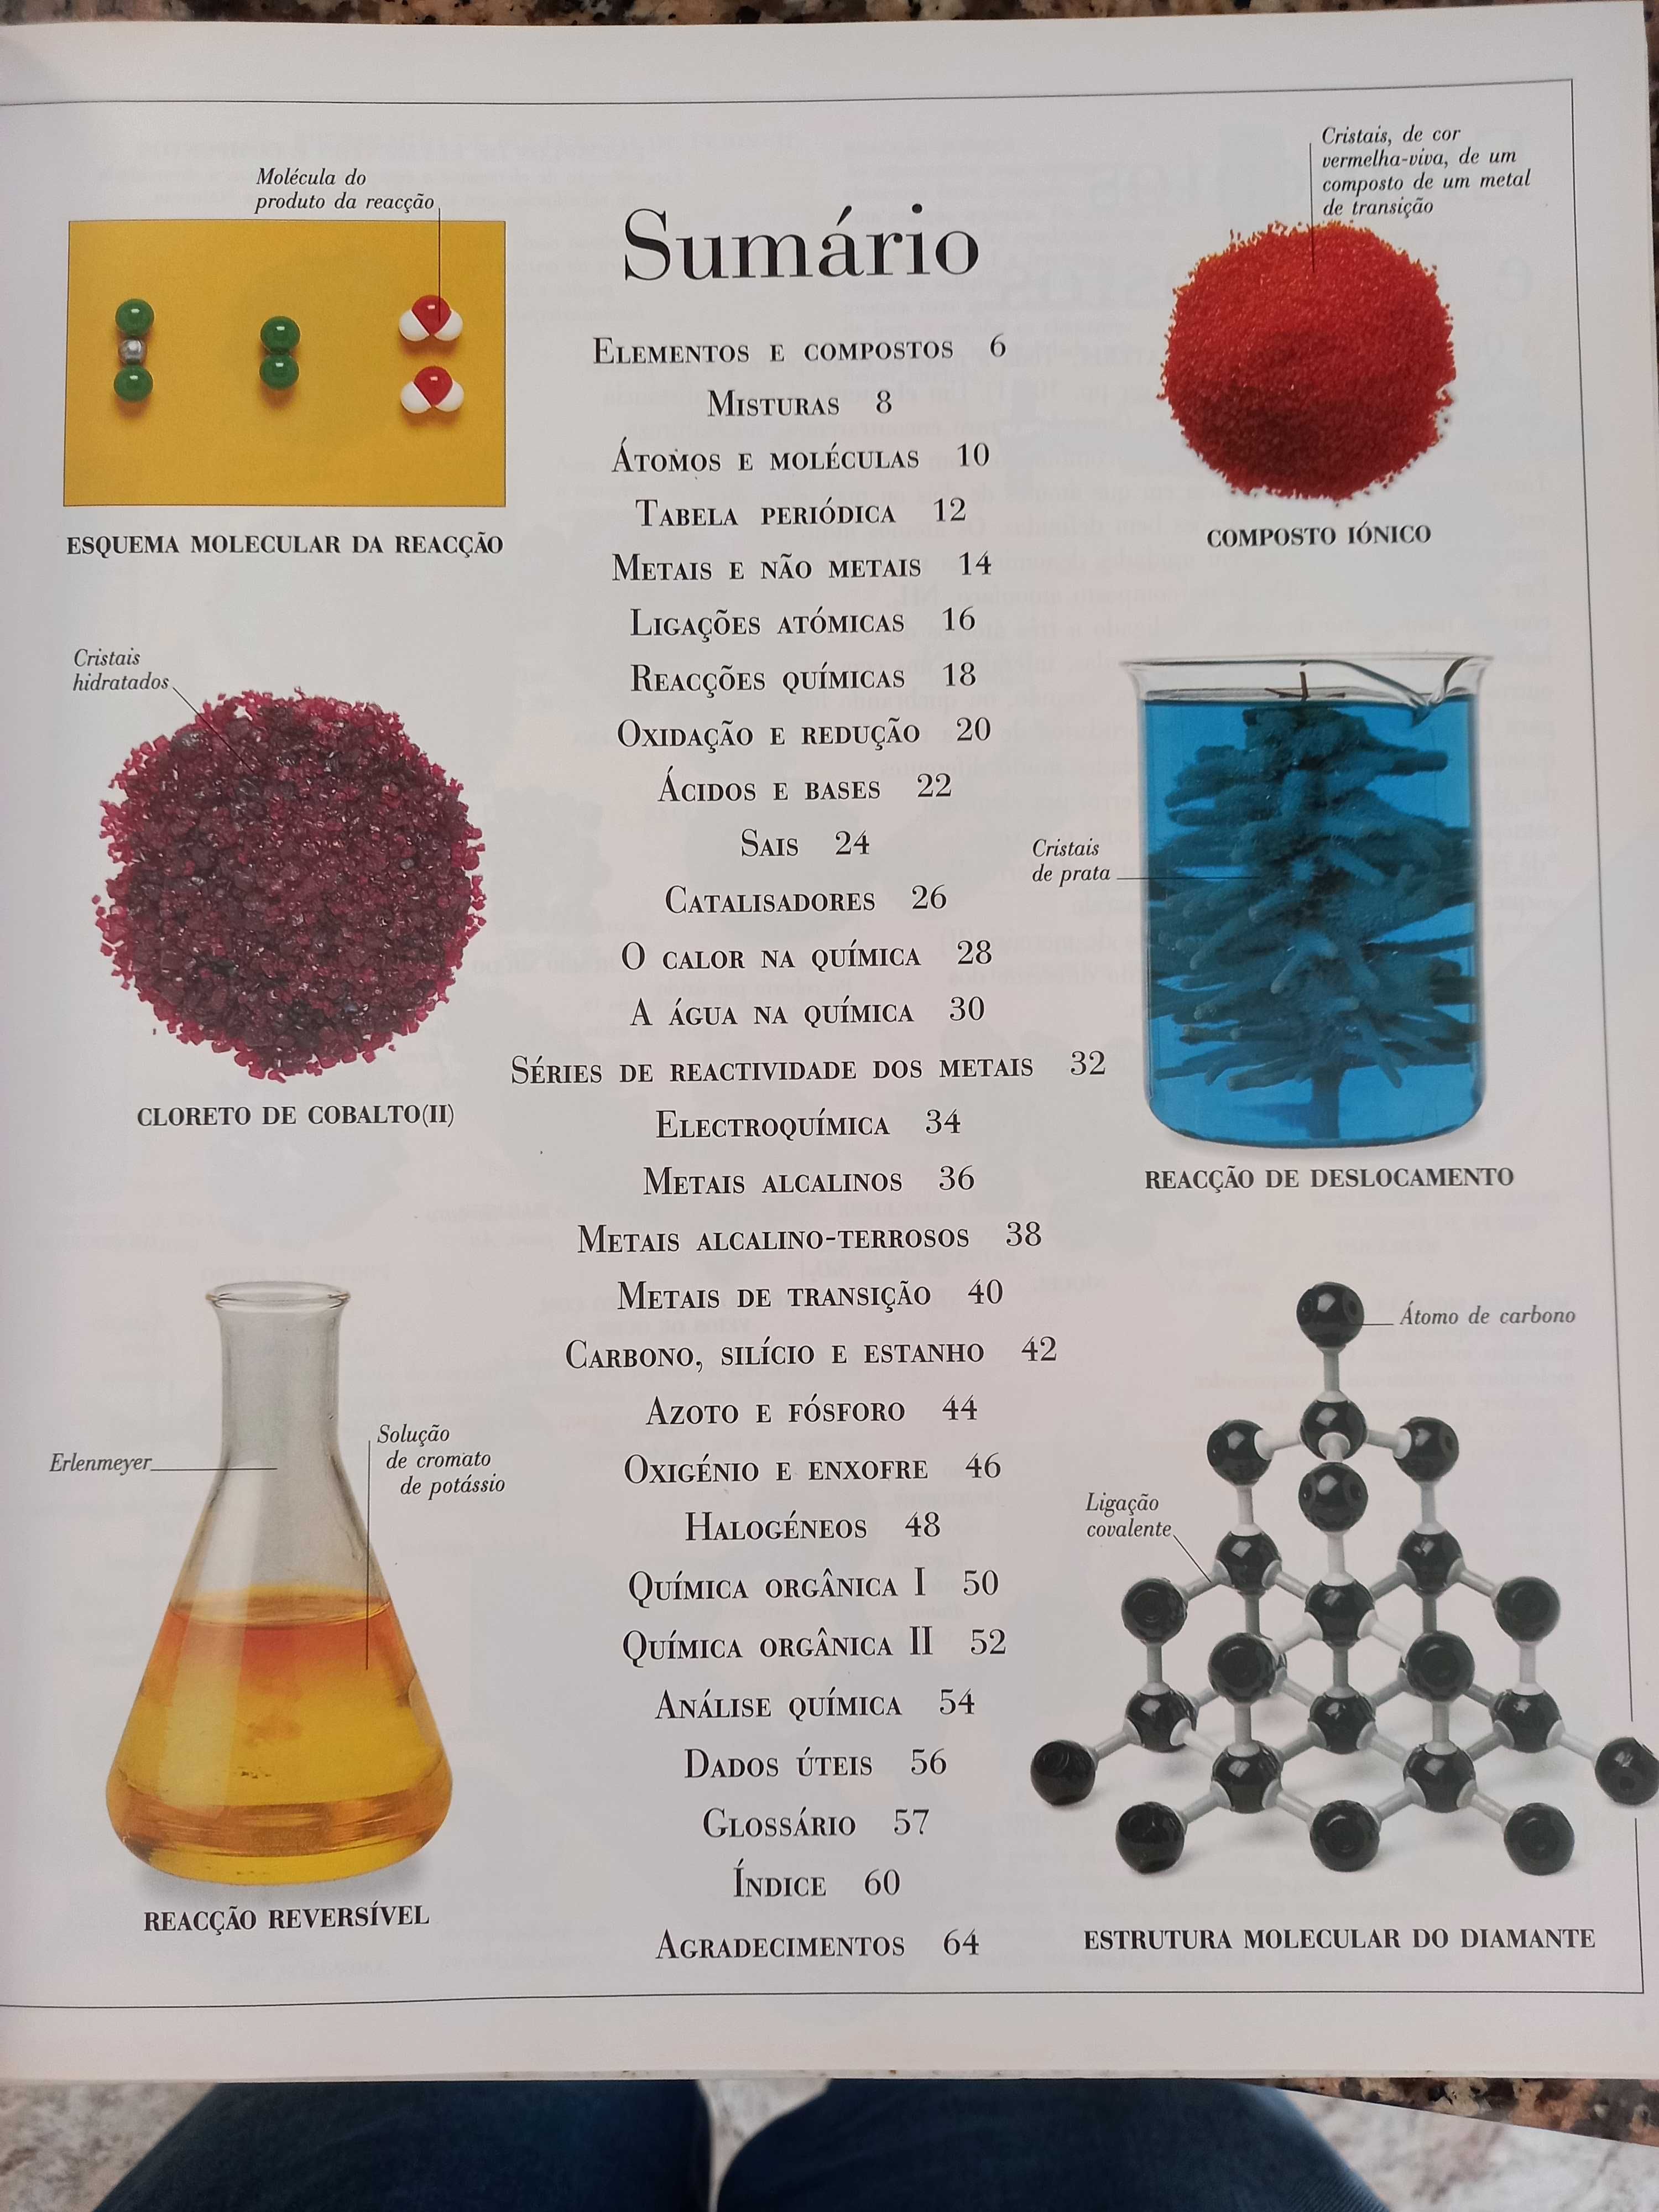 Livro/ dicionário visual da química